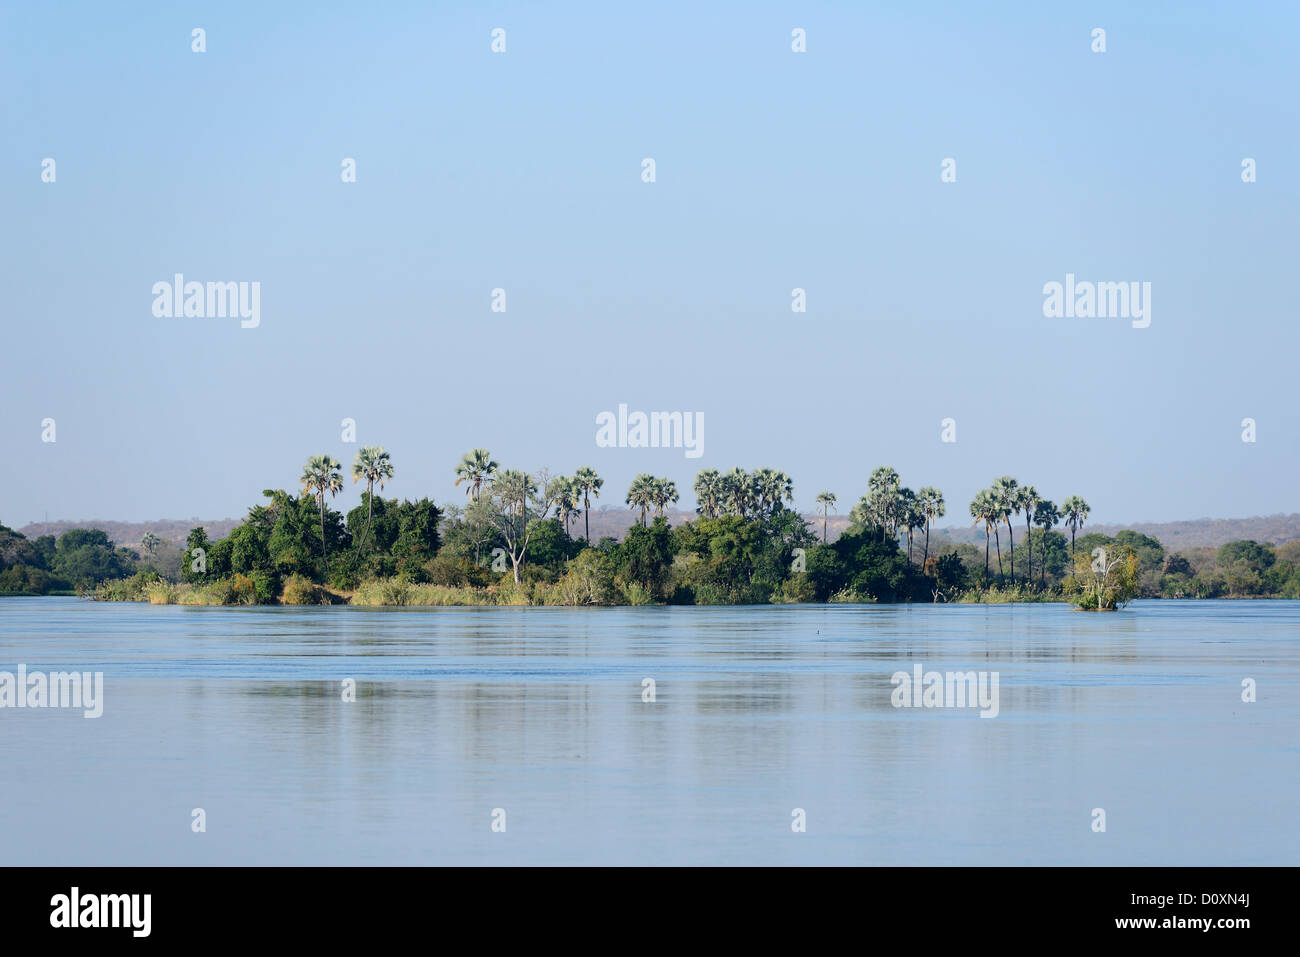 Africa, Southern, Zimbabwe, Zambezi, river, island, broad, palm, tree, expanse Stock Photo